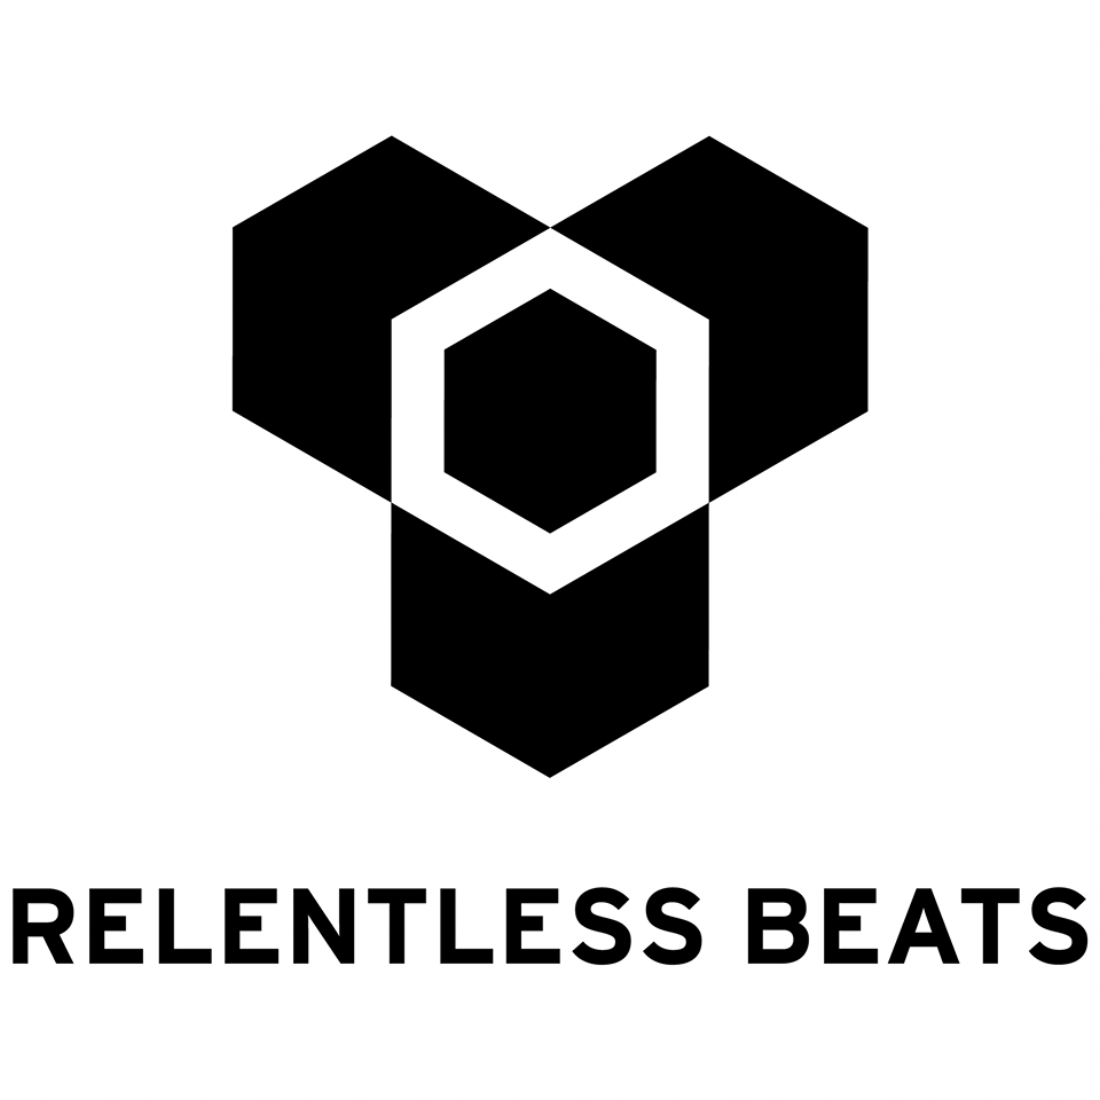 Relentelss Beats Logo.png